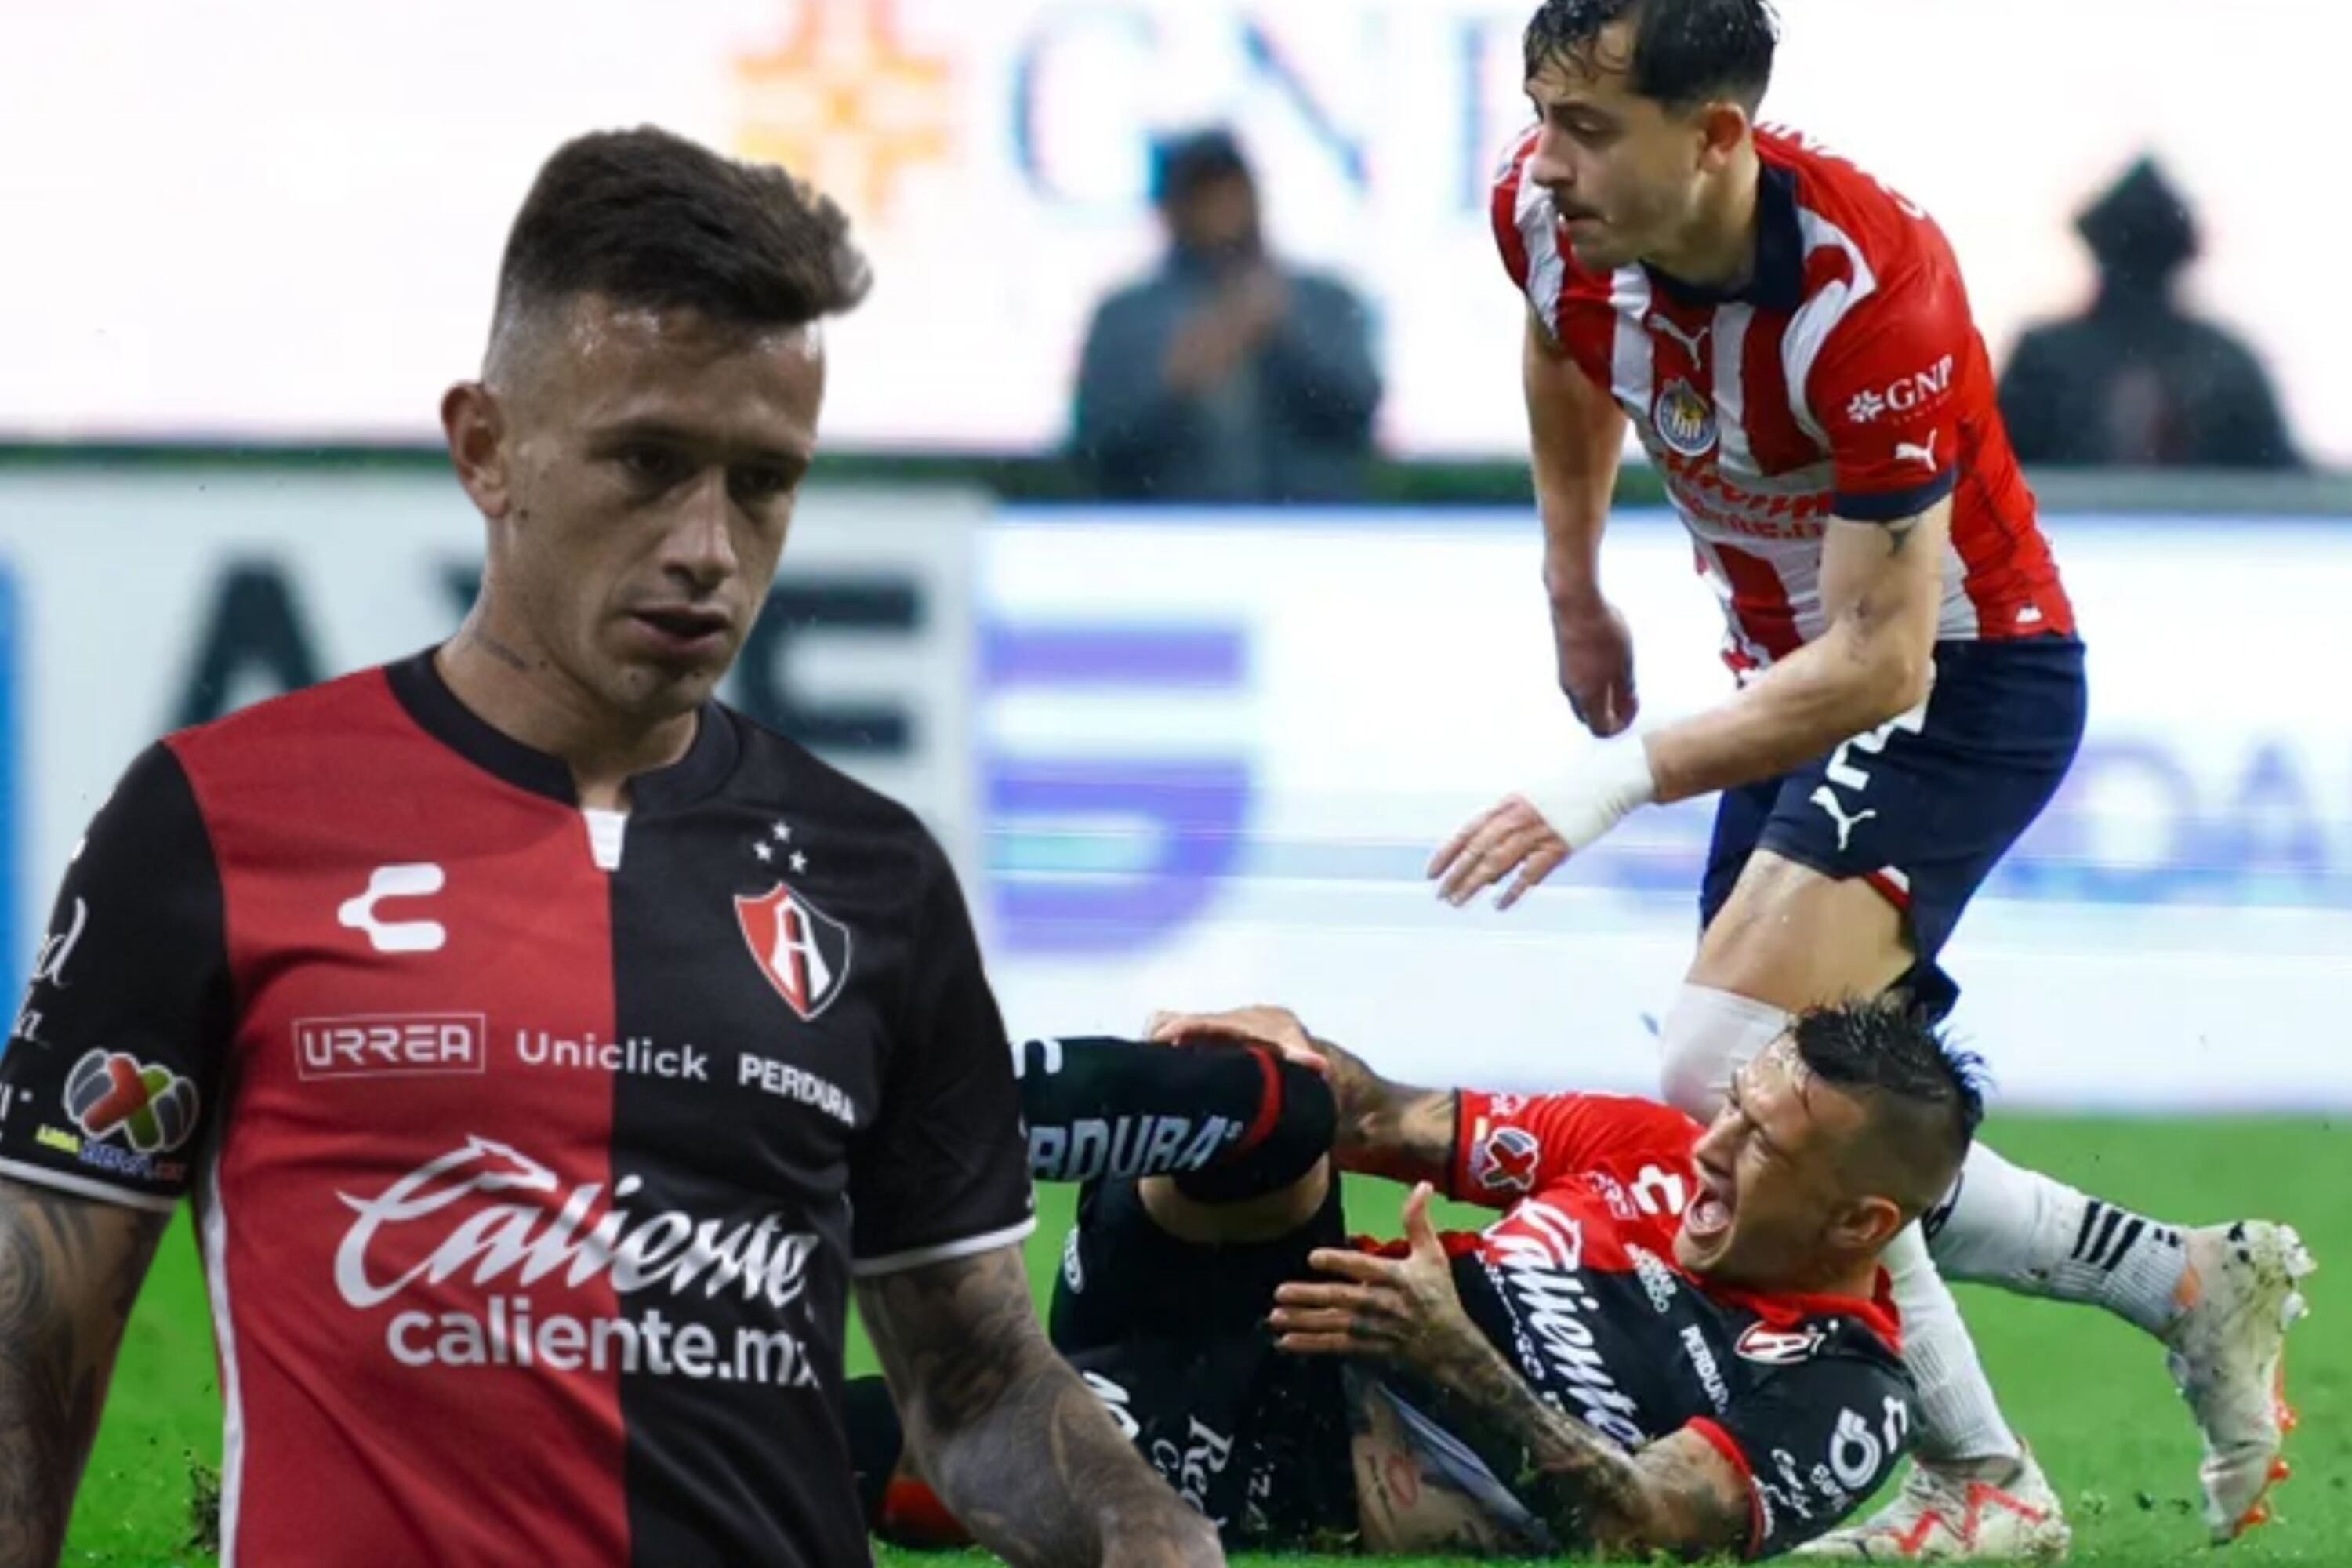 (VIDEO) Lo que hicieron con la rodilla del Huevo Lozano tras la lesión que tuvo el jugador